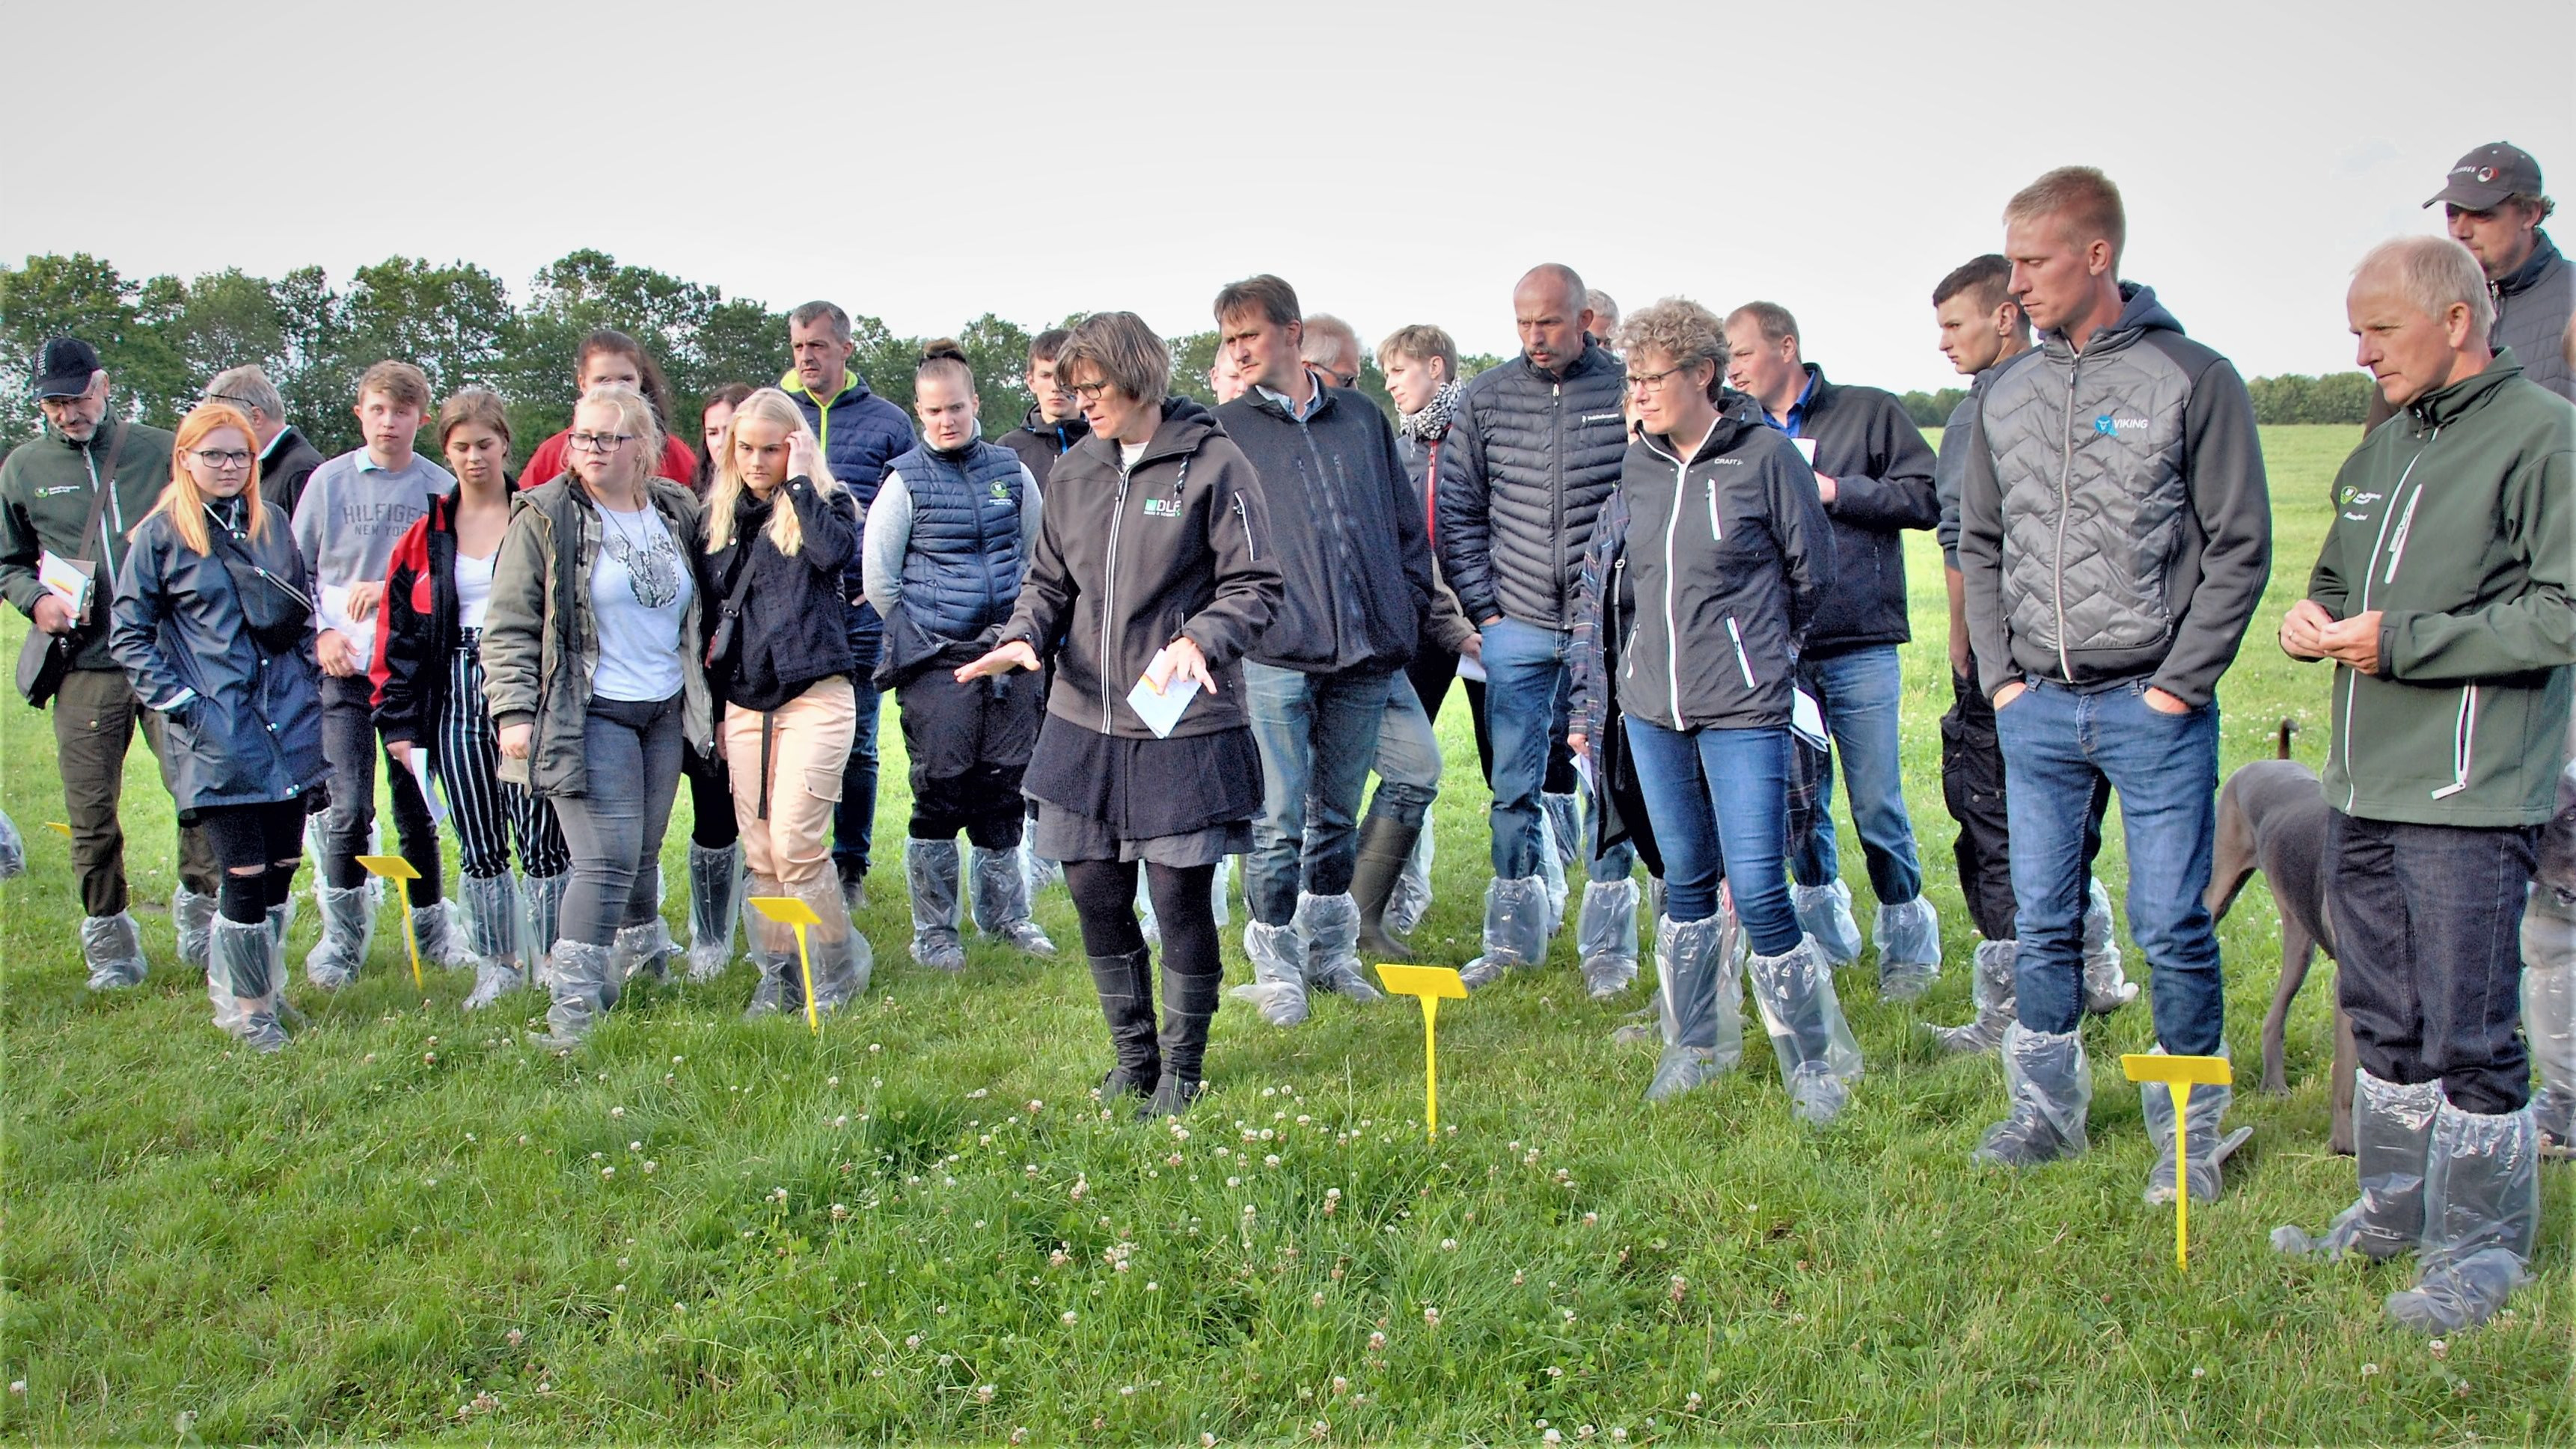 DLF's produktchef Gurli Klitgaard fremviser og fortæller foran en gruppe tilhørere om et forsøg med græsmarksblandinger og sorter, der er udlagt hos Anne og Gert Lassen, Silkeborg.